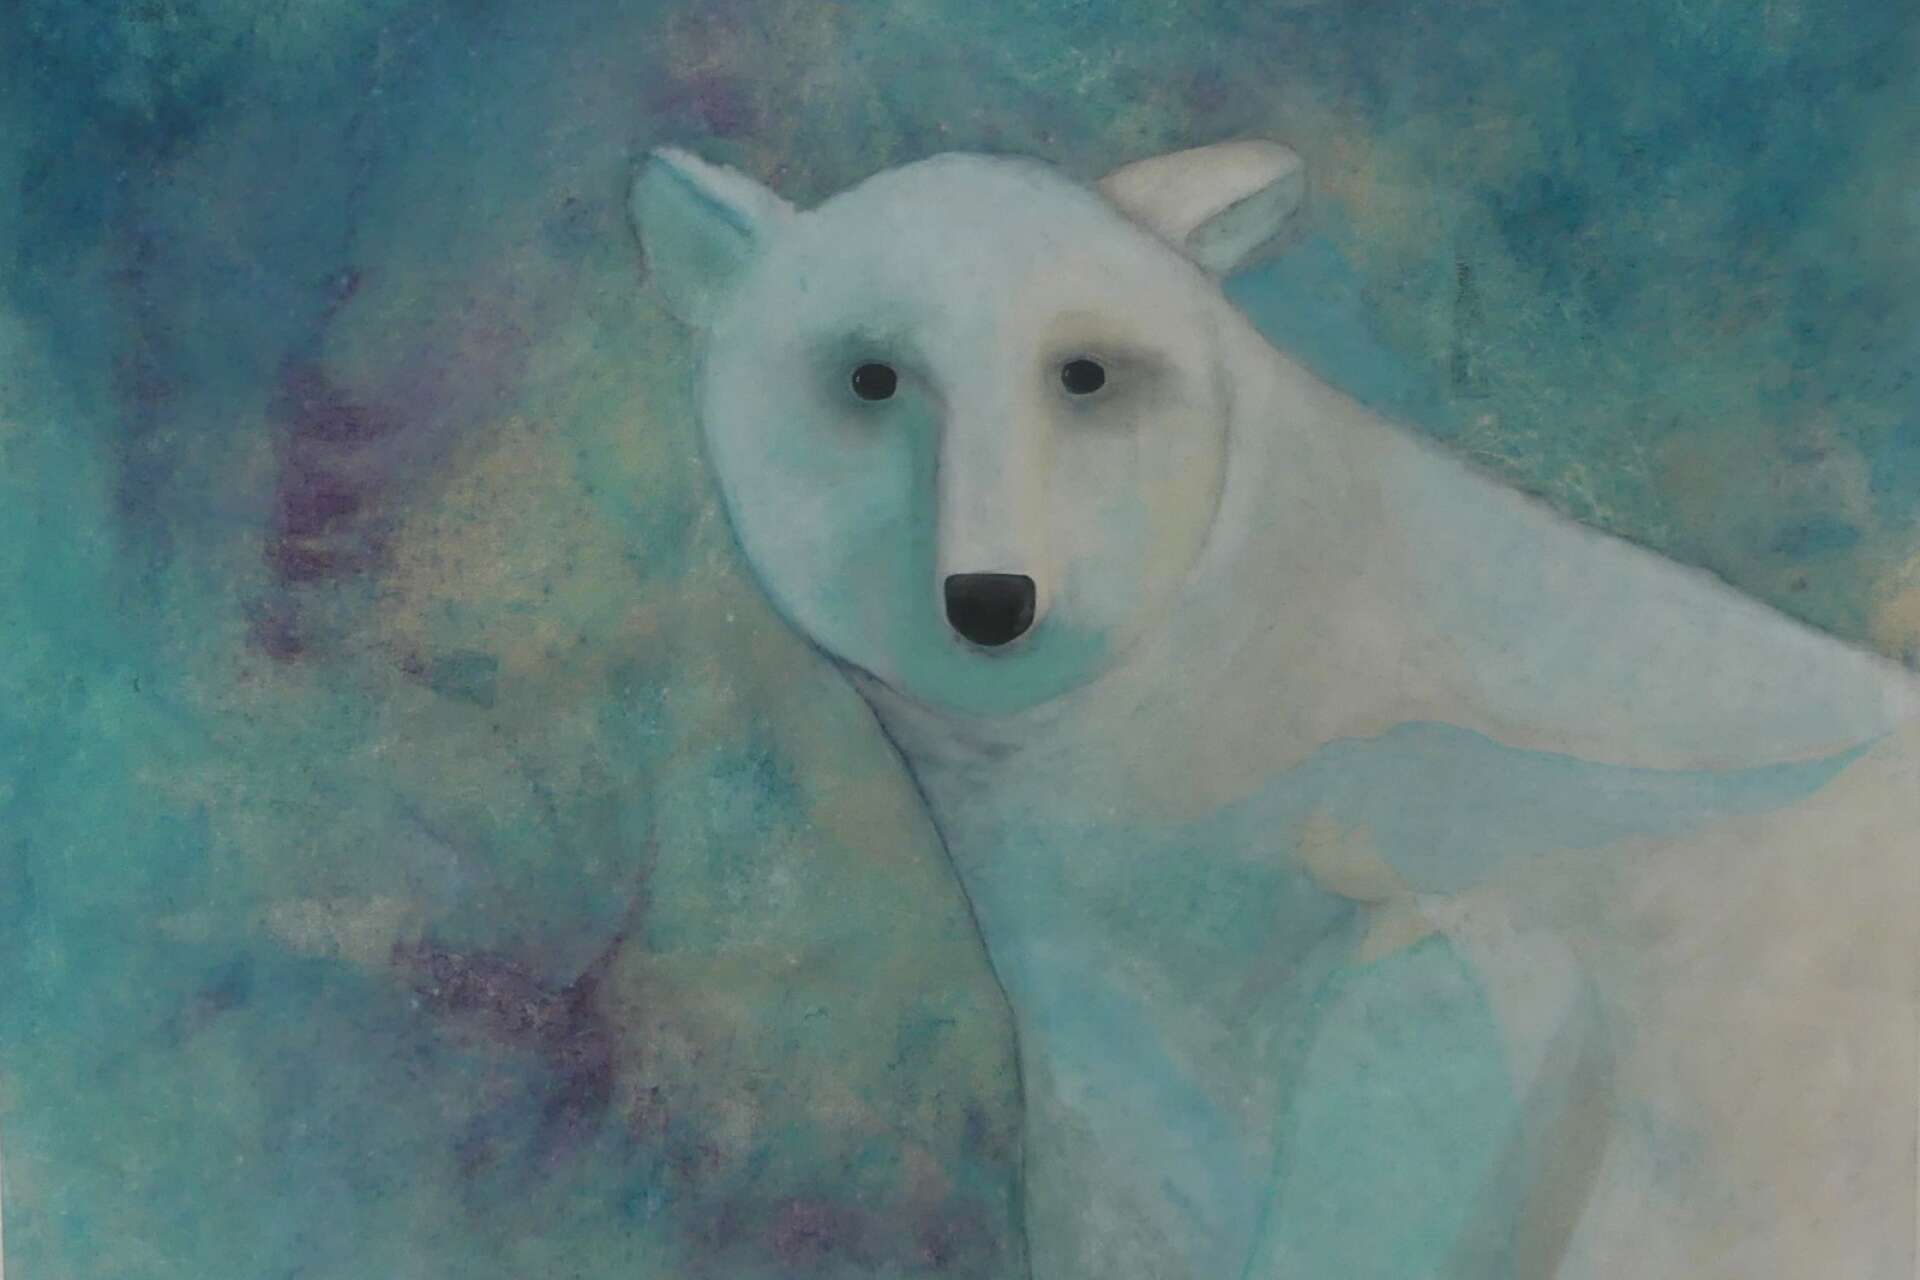 Carina har fångat kylan i bilden med en isbjörn.